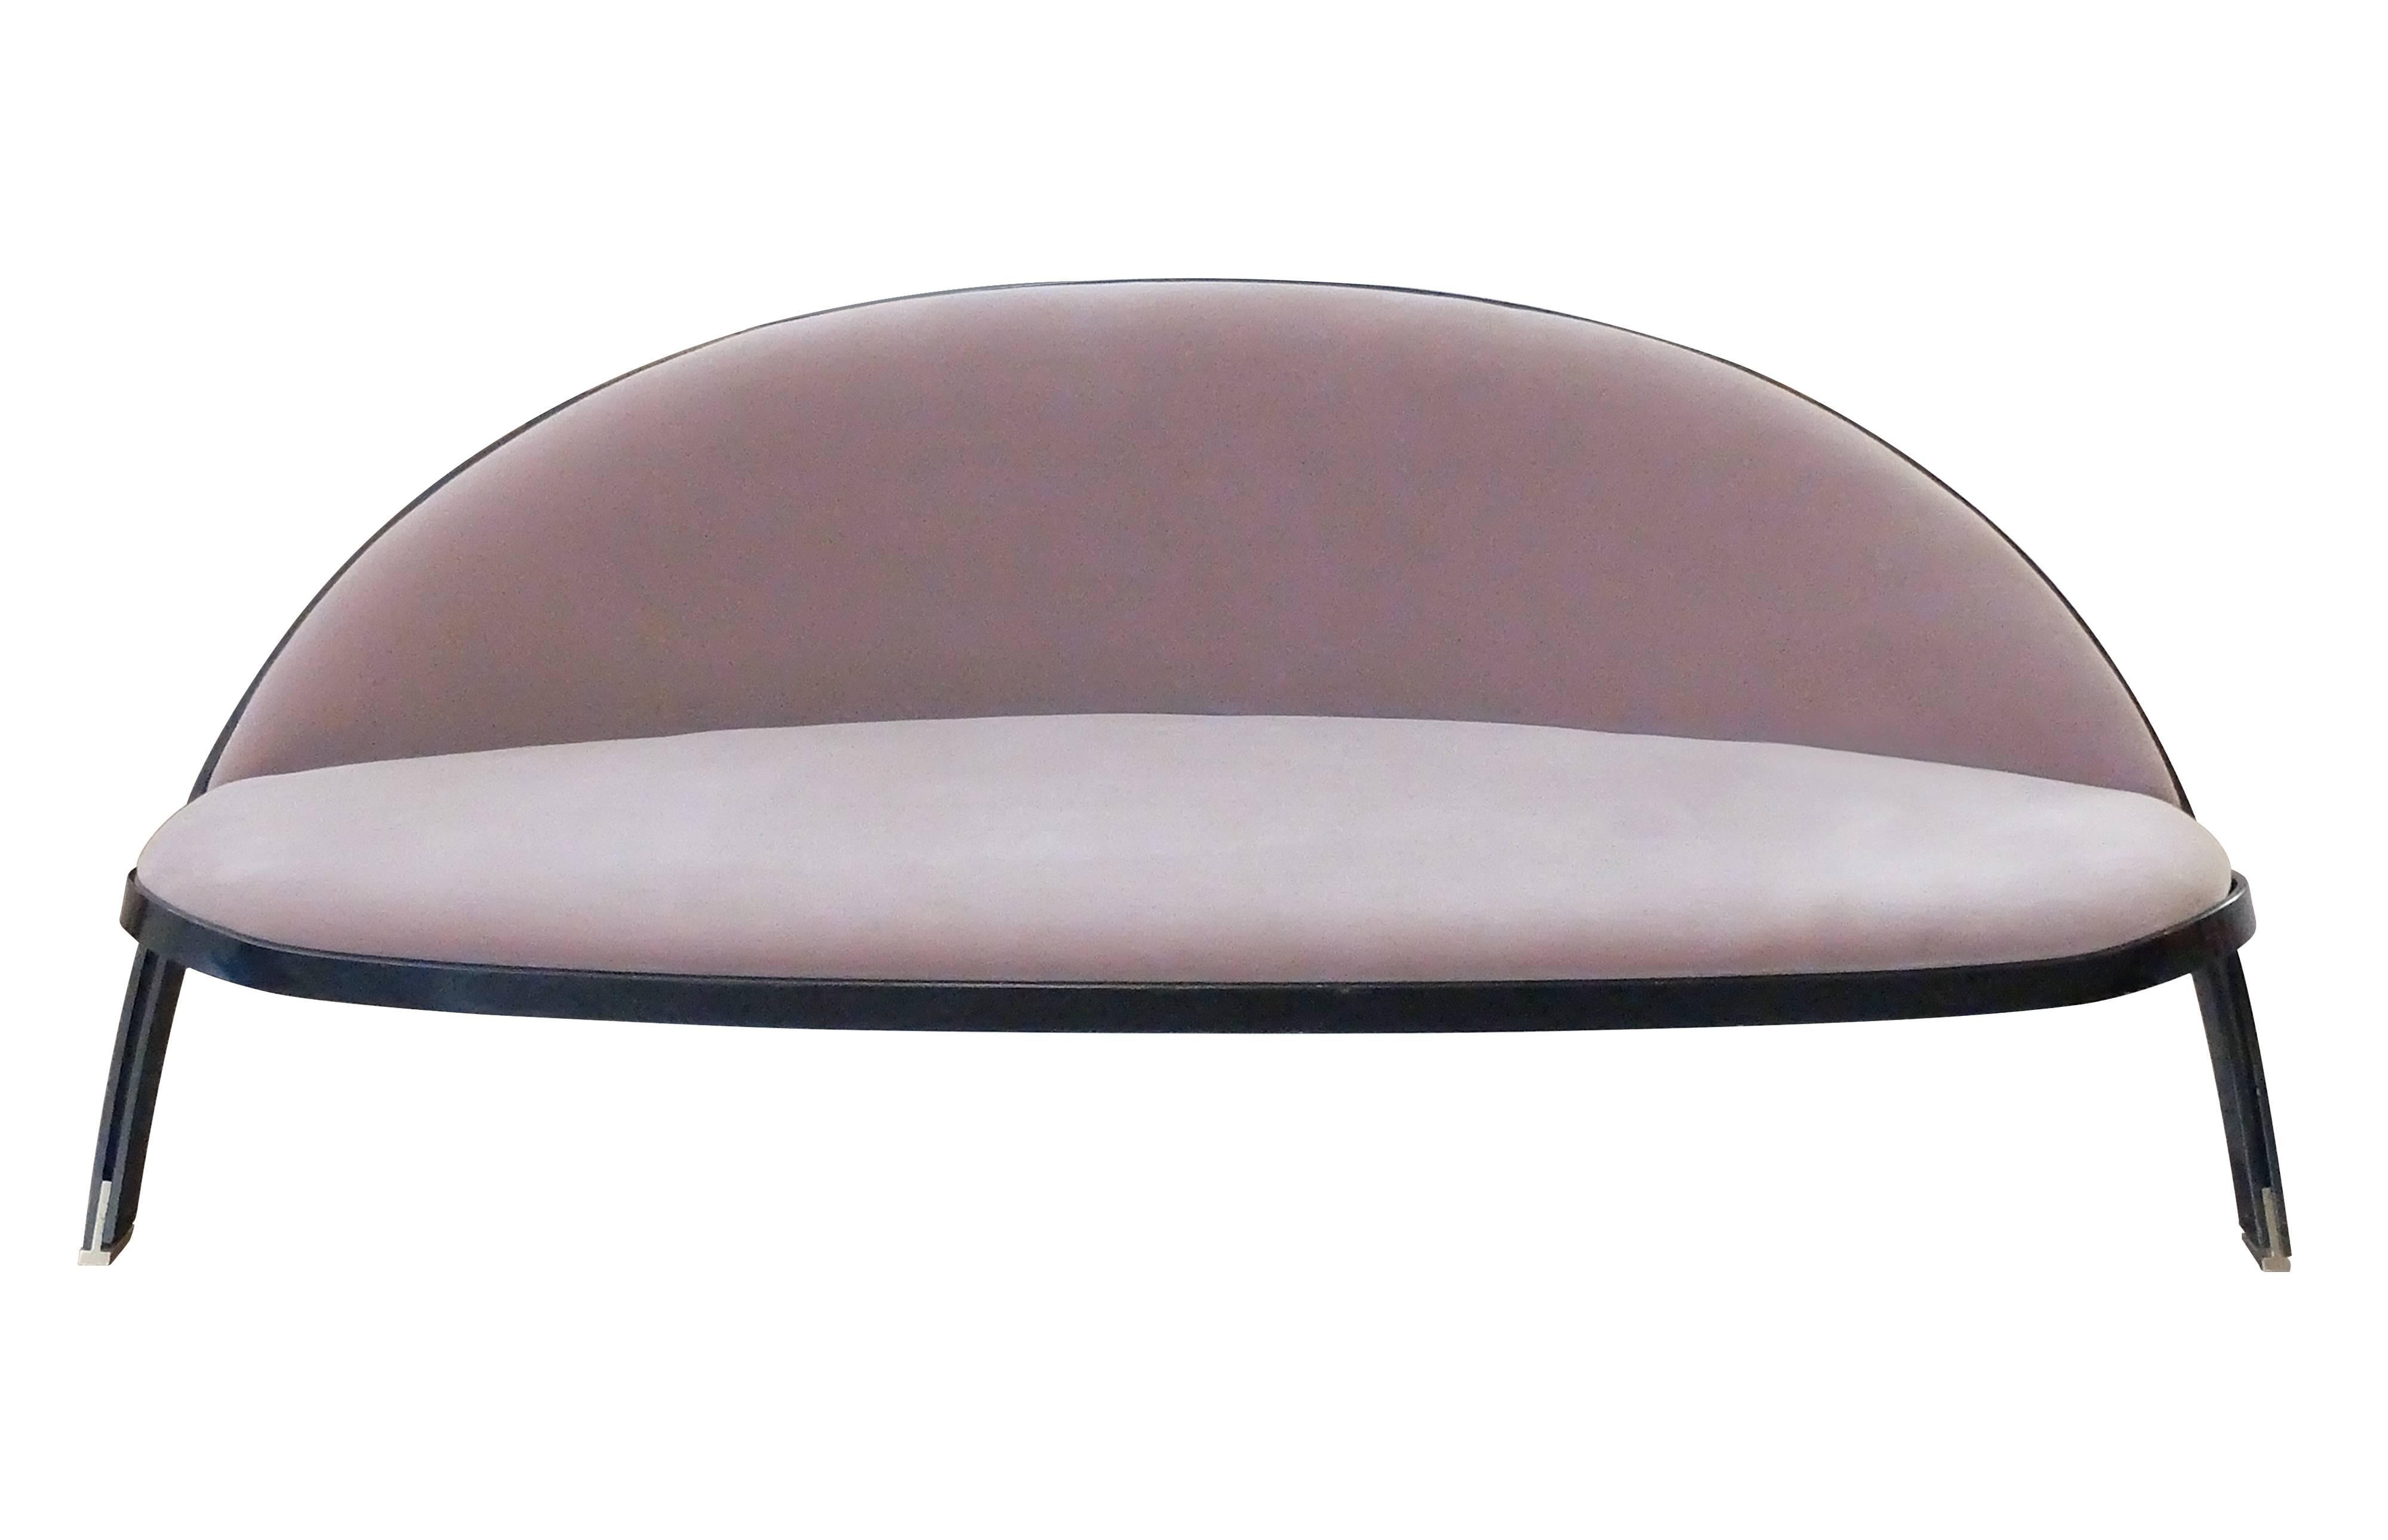 Ce canapé conçu par Gastone Rinaldi en 1957 pour la société Rima de Padoue, en Italie, présente une pureté artisanale grâce à son cadre métallique simple mais sophistiqué en forme d'arbalète, considéré à l'époque comme une percée pour cette forme